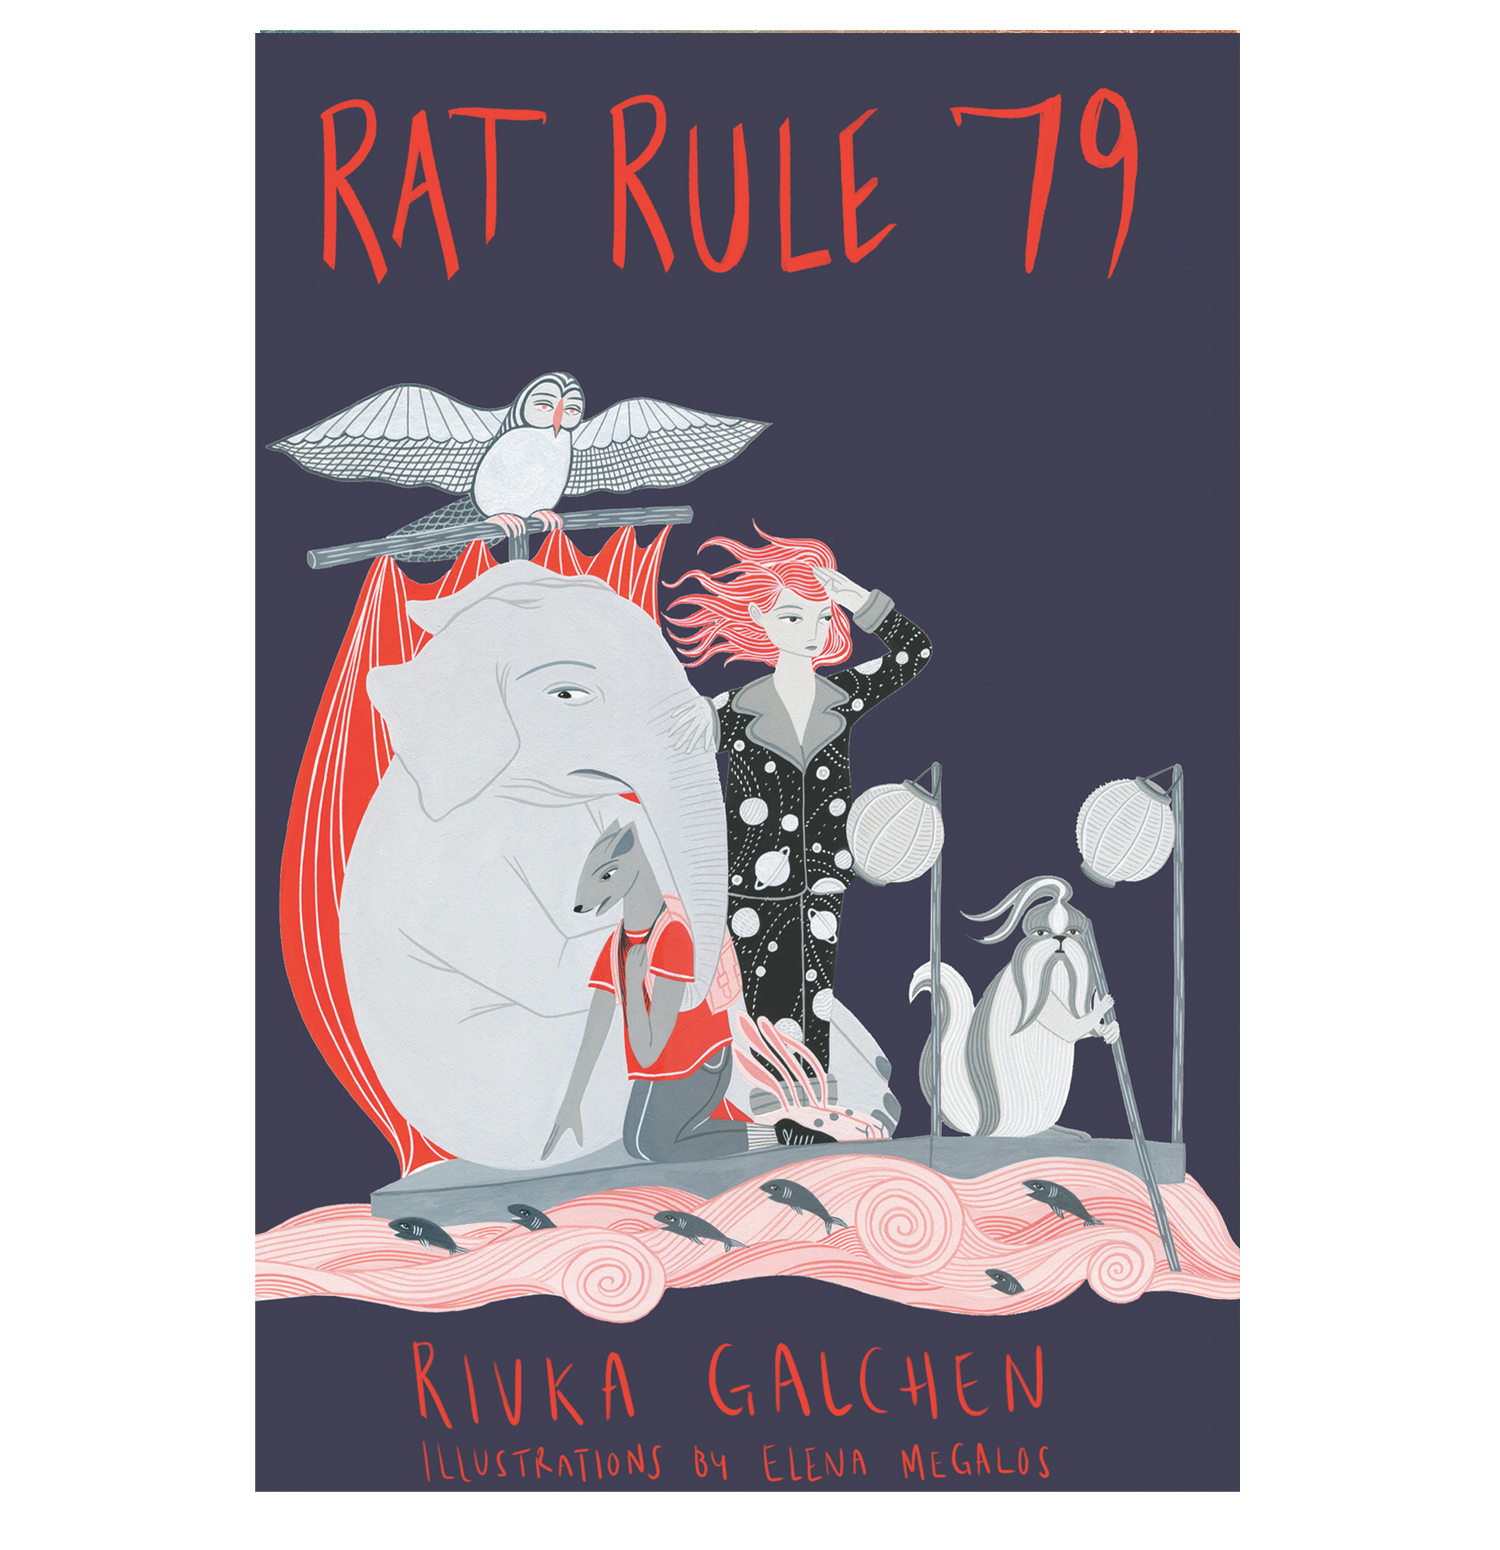 RAT RULE 79 for website.png